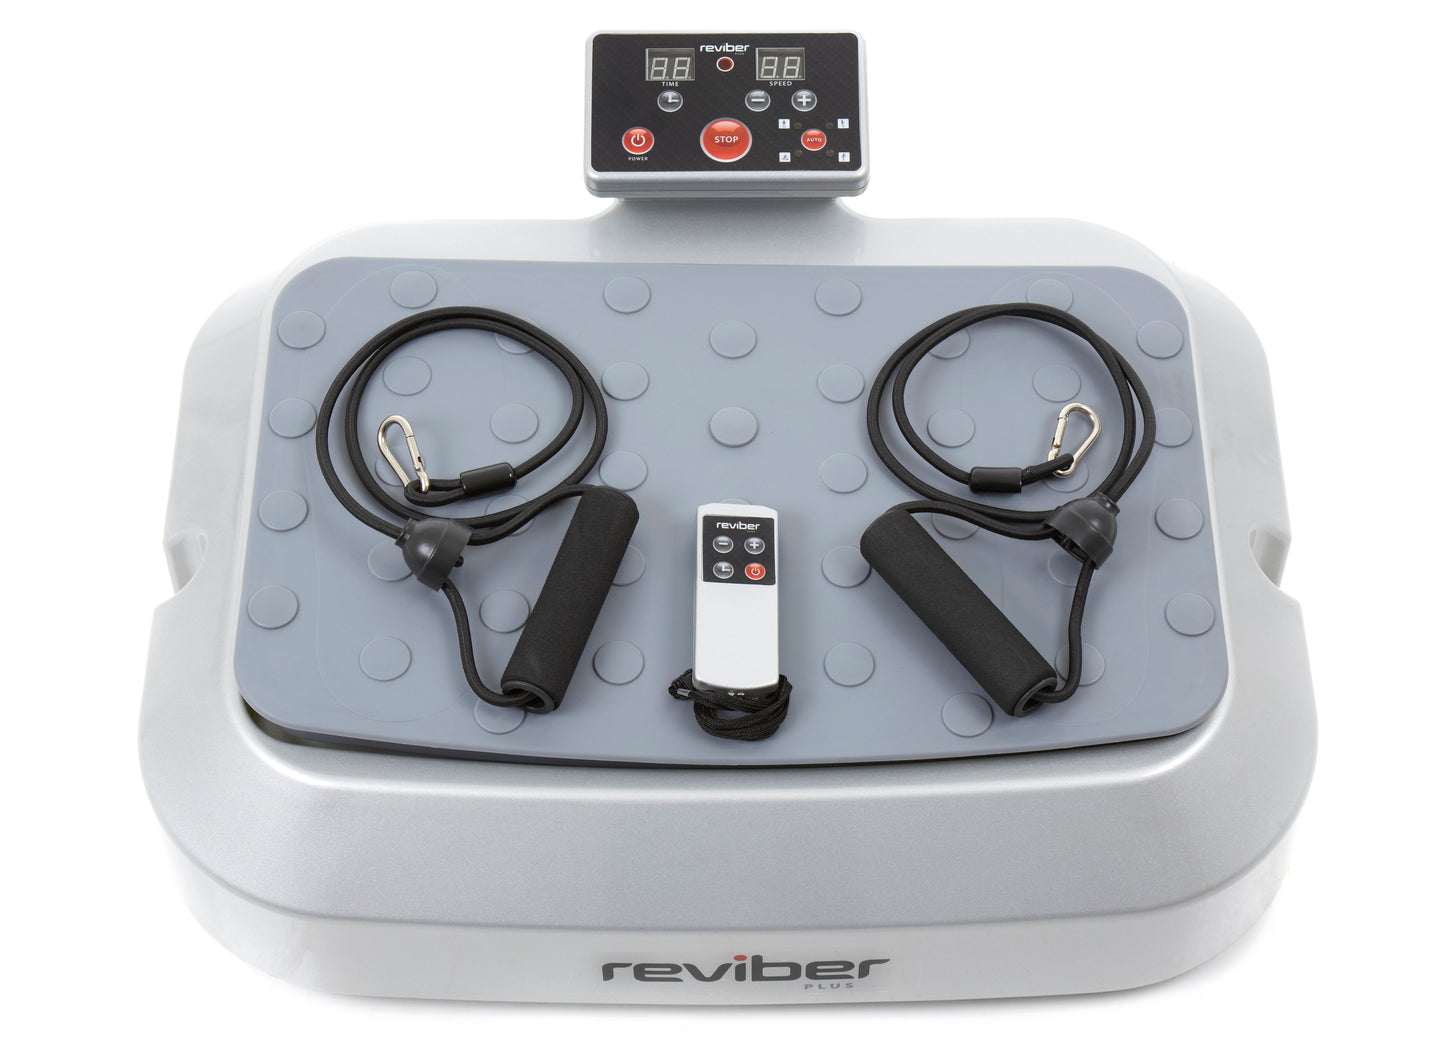 Reviber Plus Oscillating Vibration Plate Exerciser